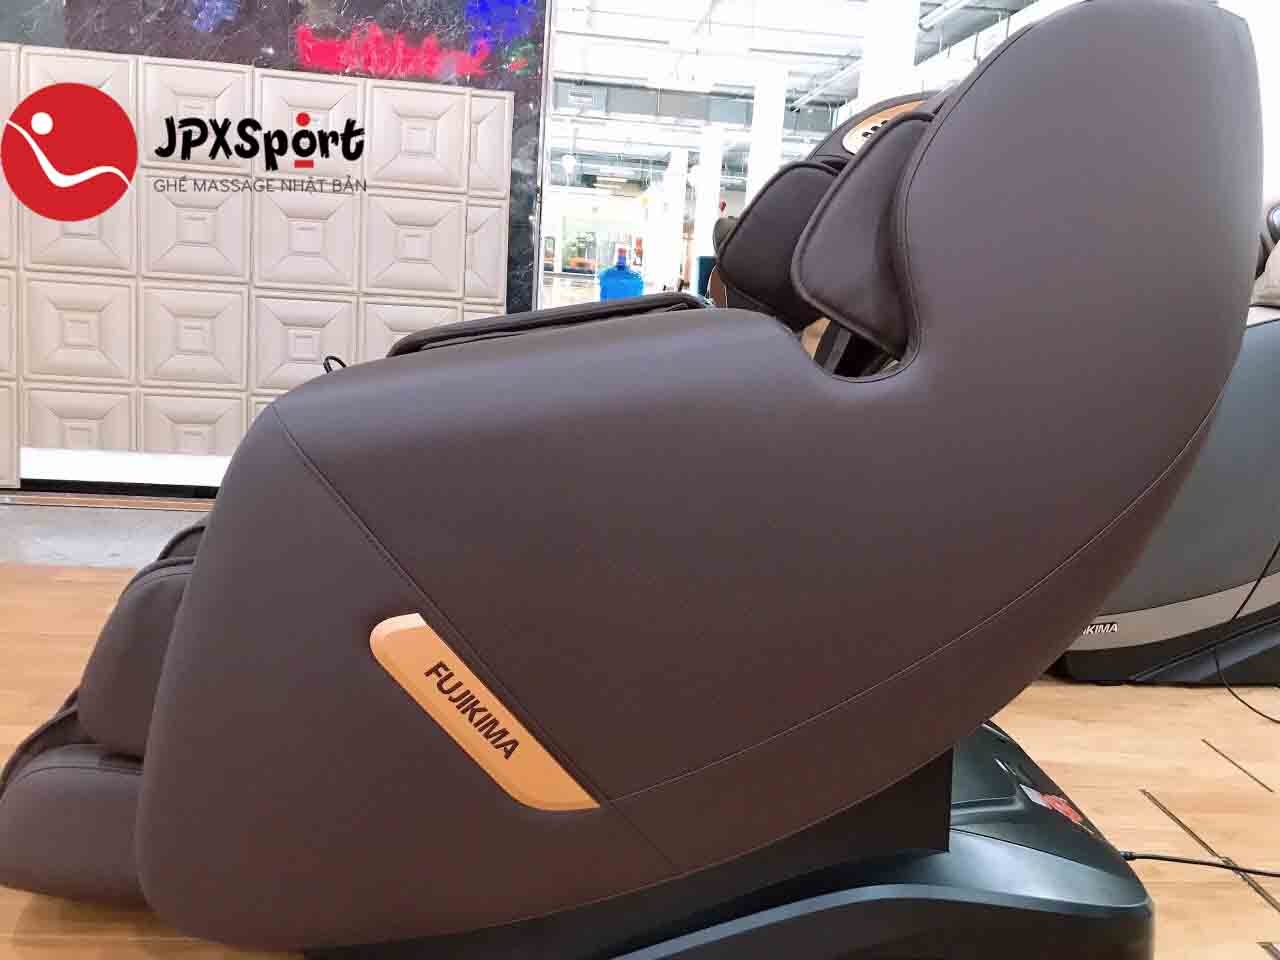 Ghế massage Fujikima FJ C106 mang đến cho người dùng nhiều lợi ích về sức khỏe